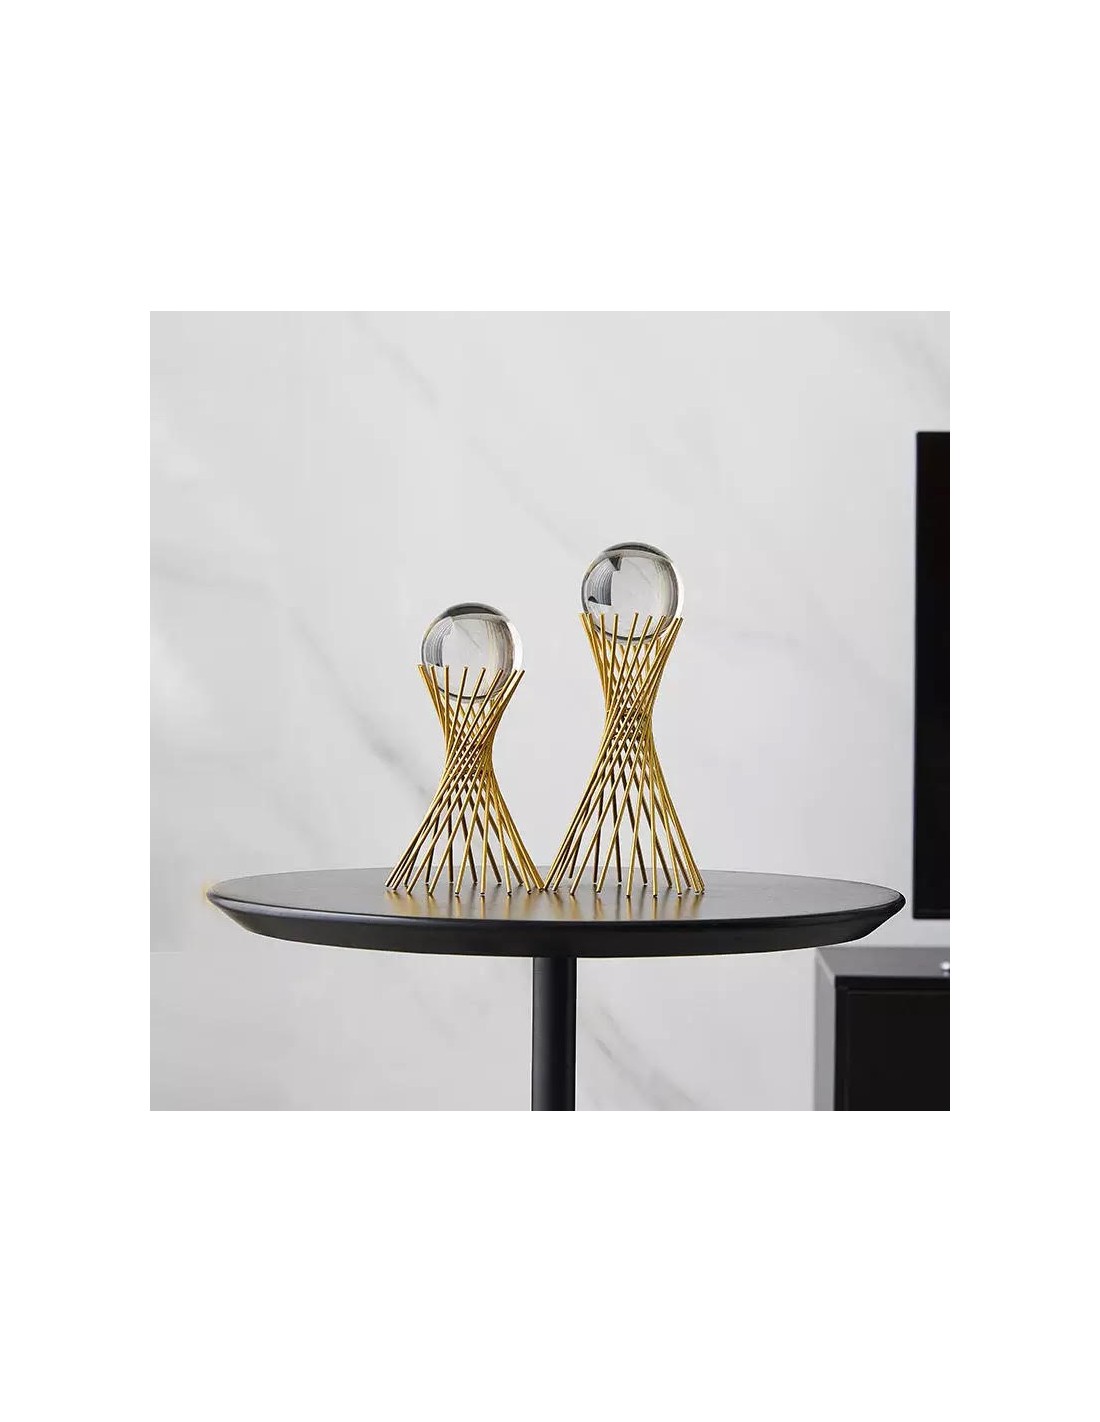 Boule de cristal ronde moderne avec support doré, décoration d'intérieur,  objet de figurine de bureau